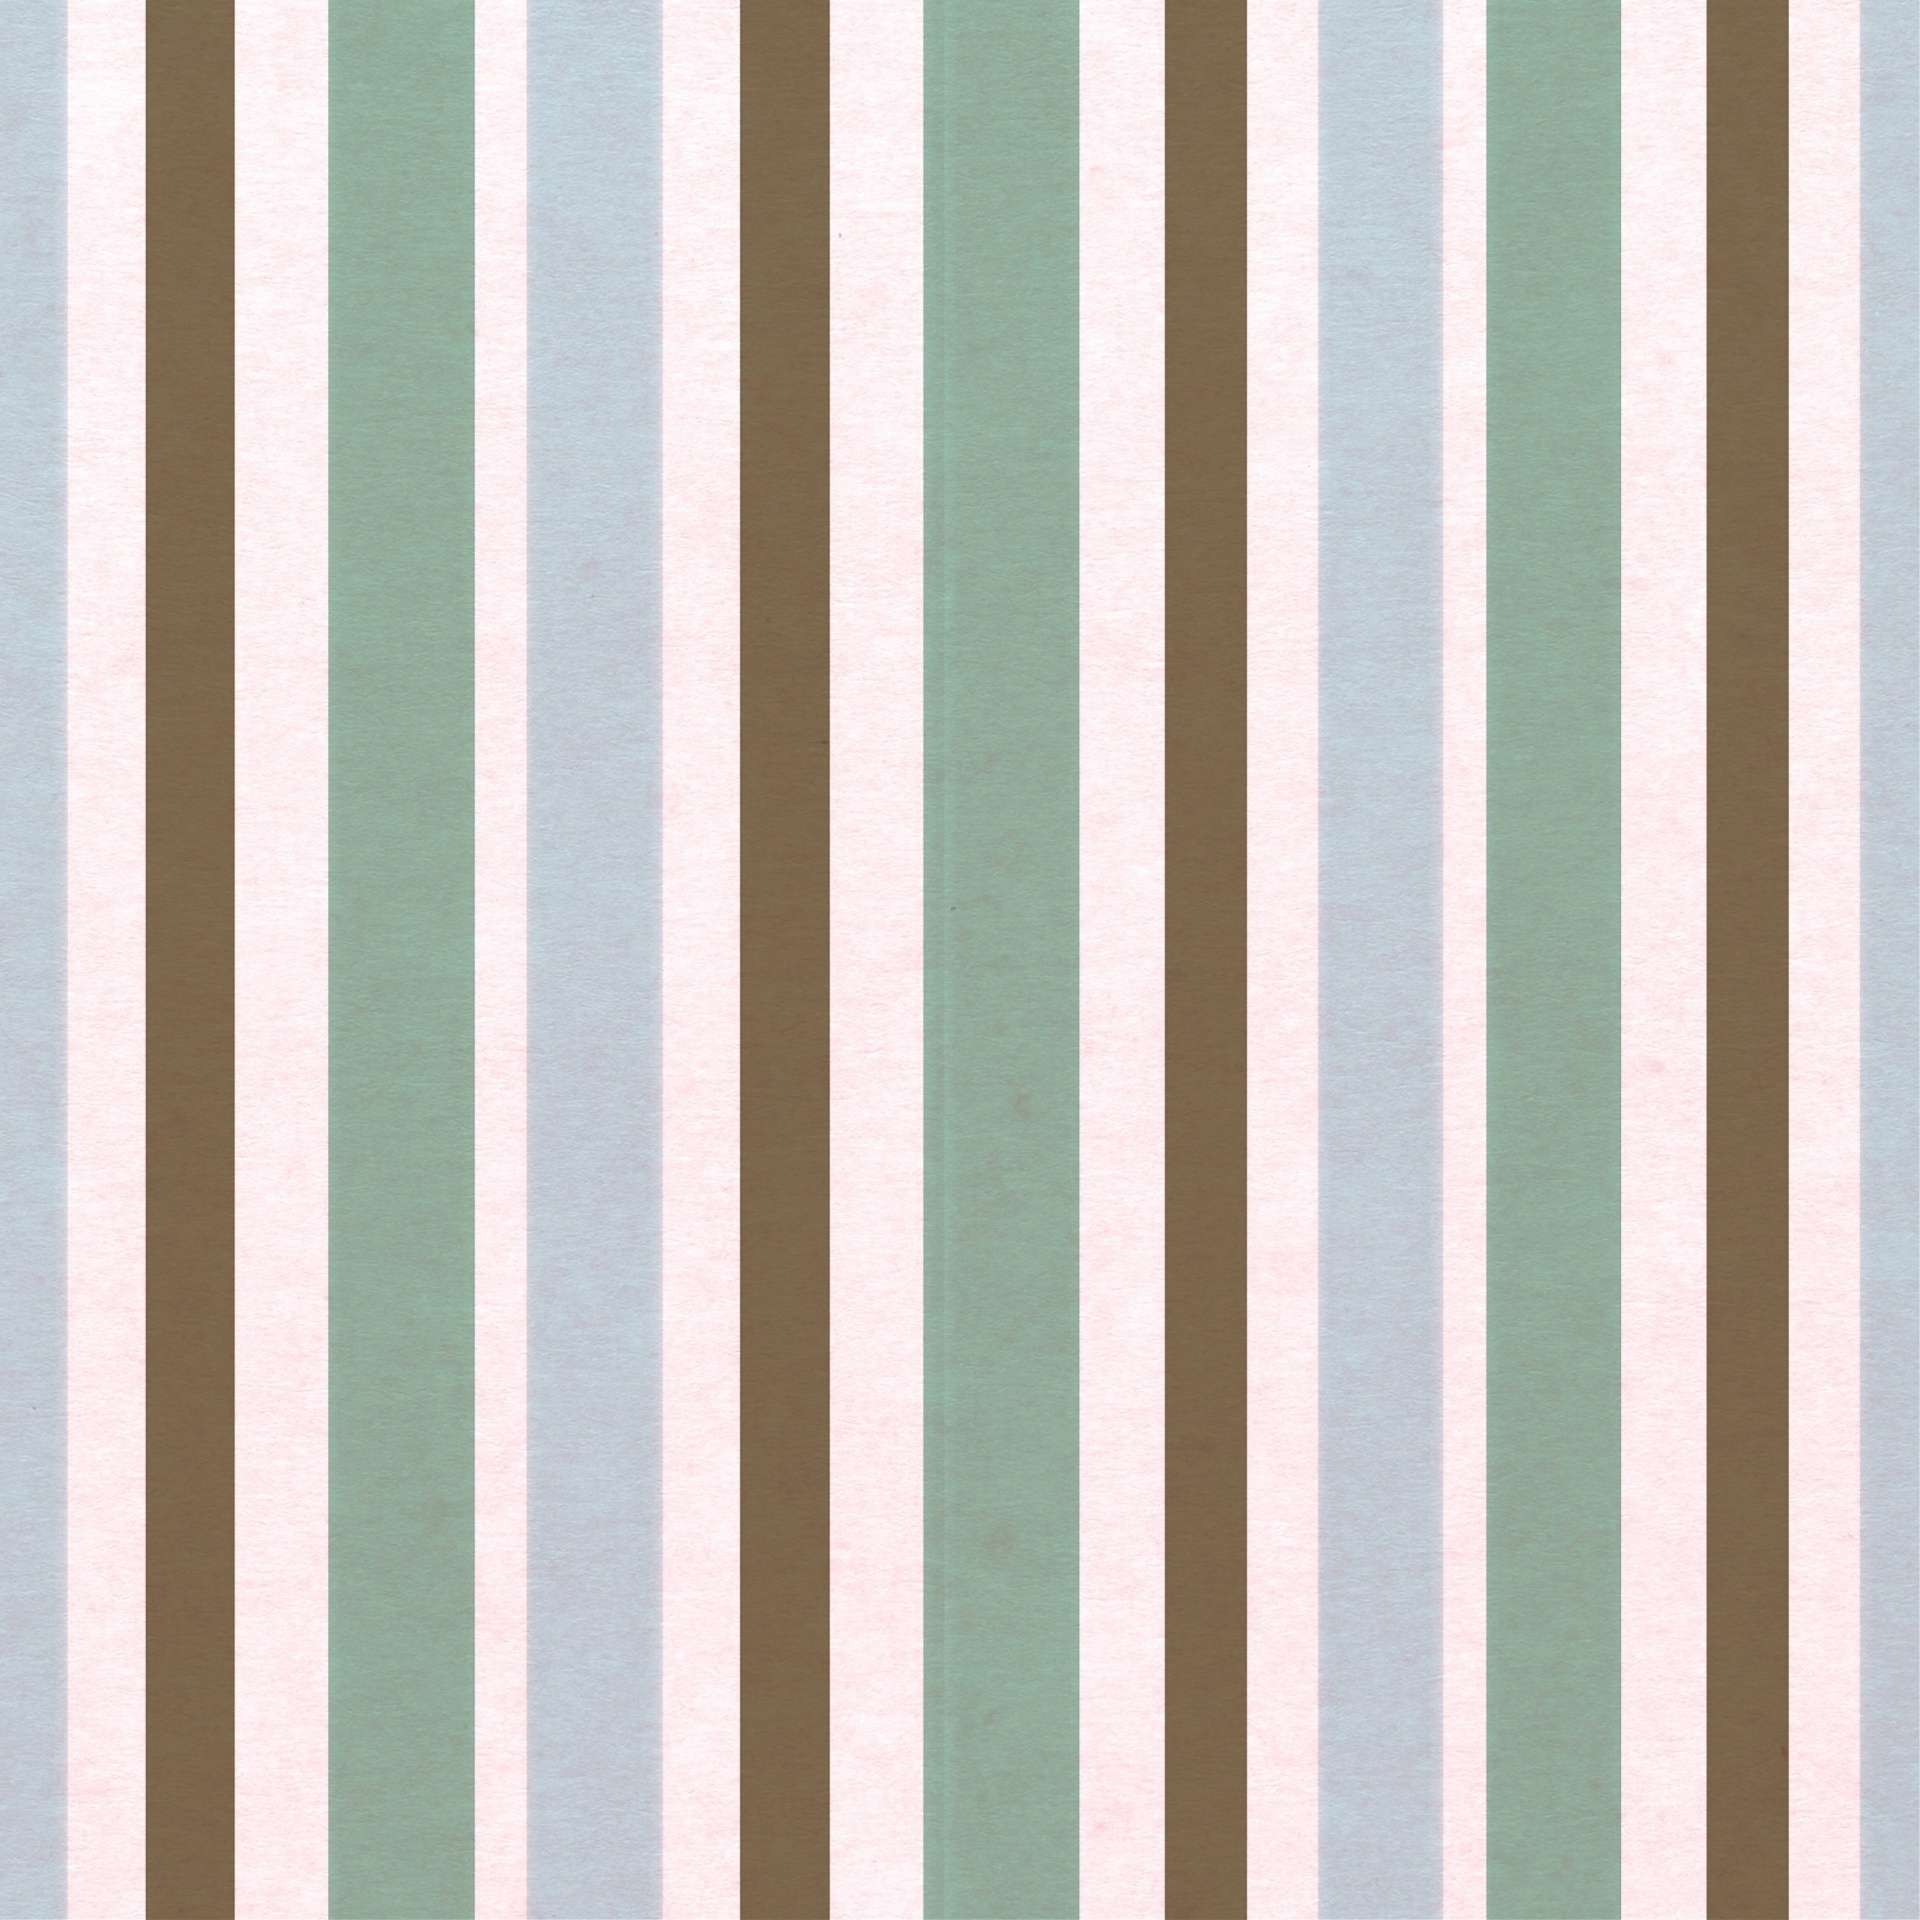 Stripes Lines Background Vintage